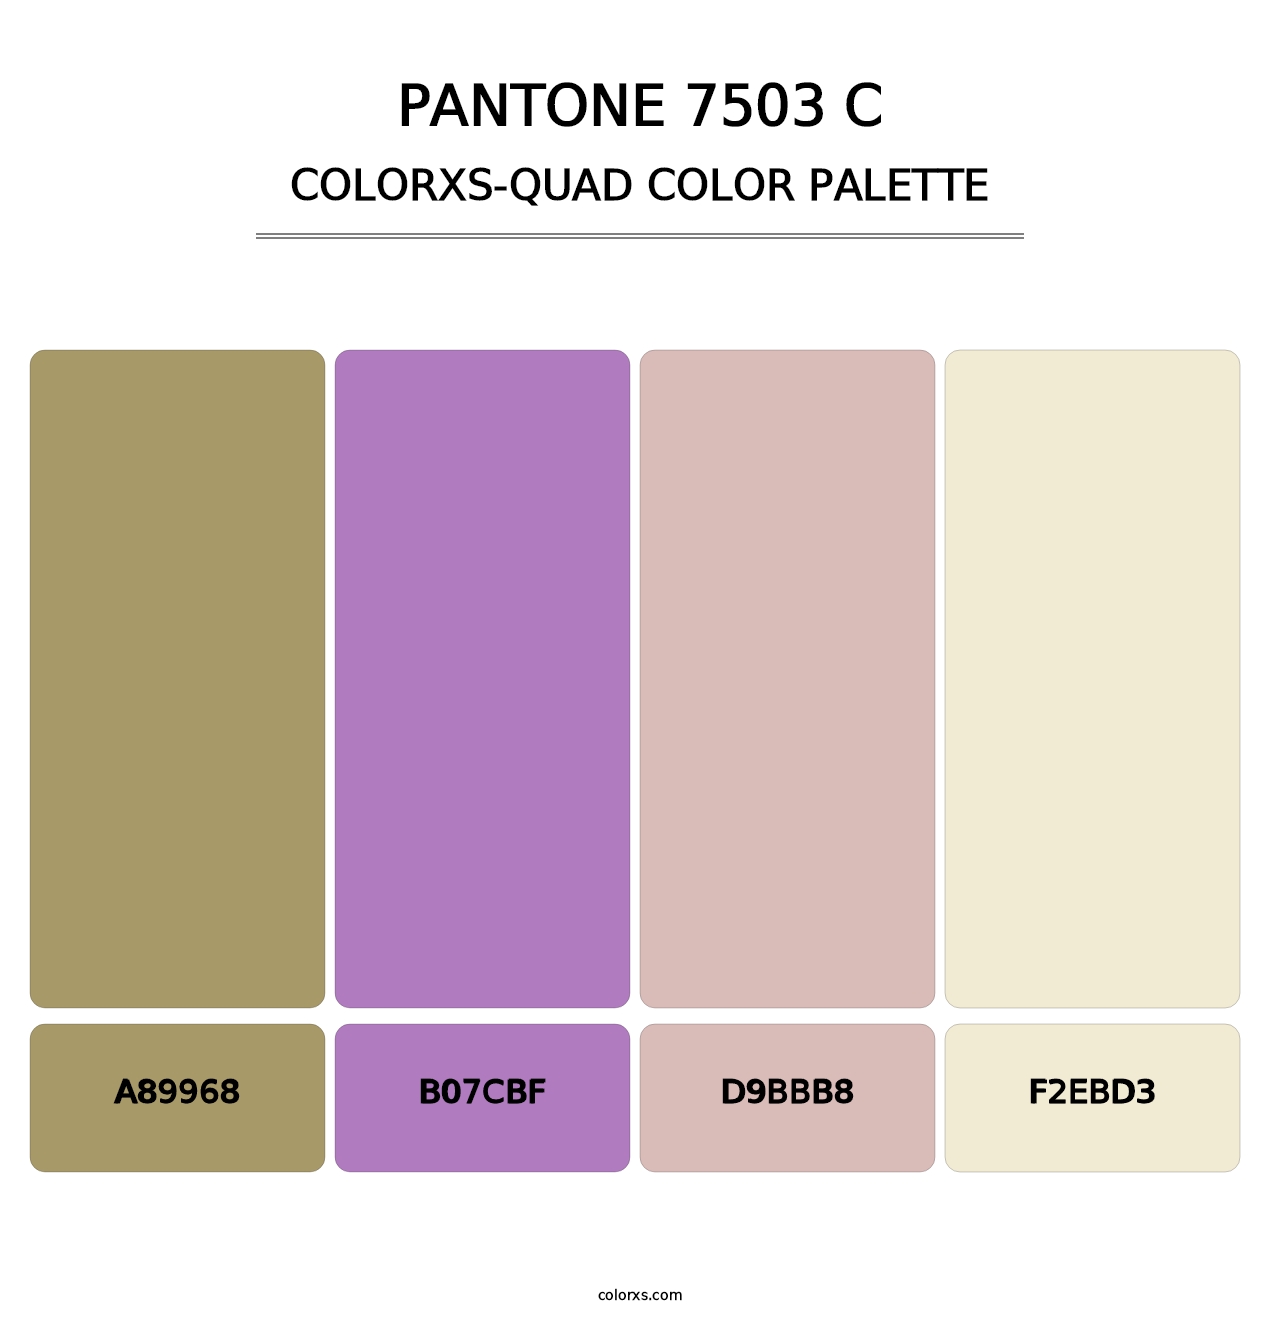 PANTONE 7503 C - Colorxs Quad Palette